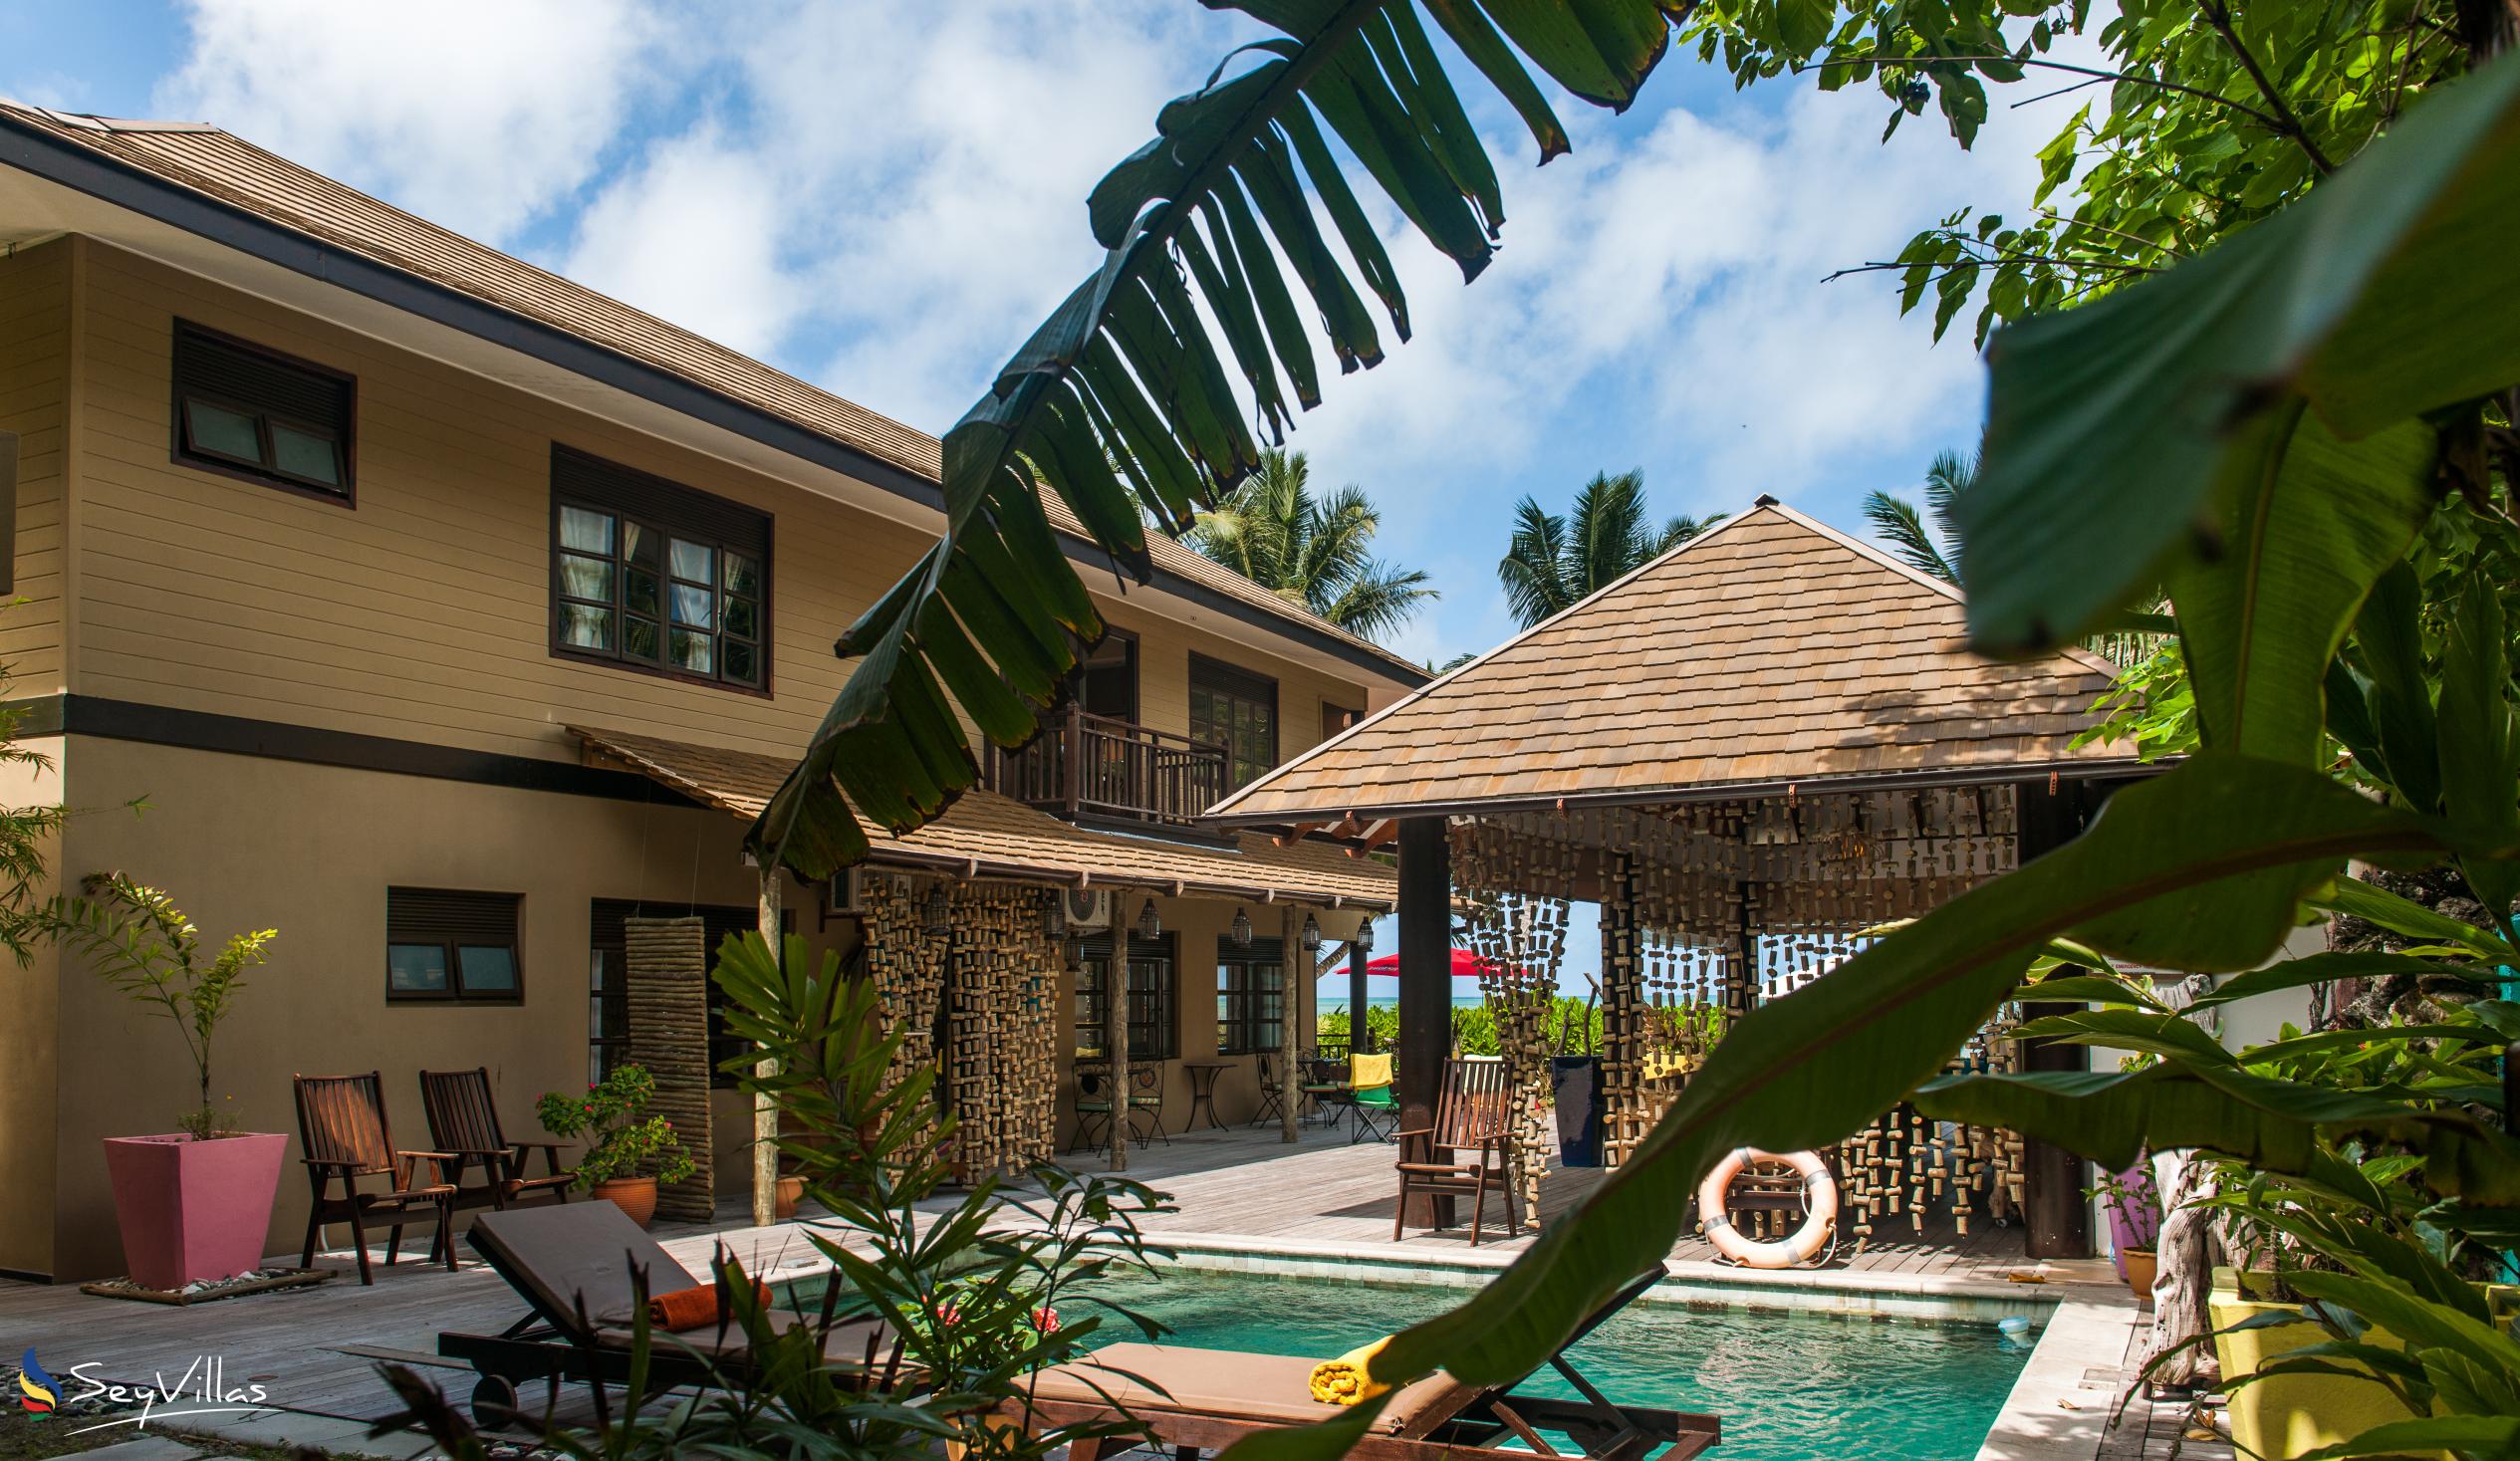 Foto 18: Villas des Alizes - Aussenbereich - Praslin (Seychellen)